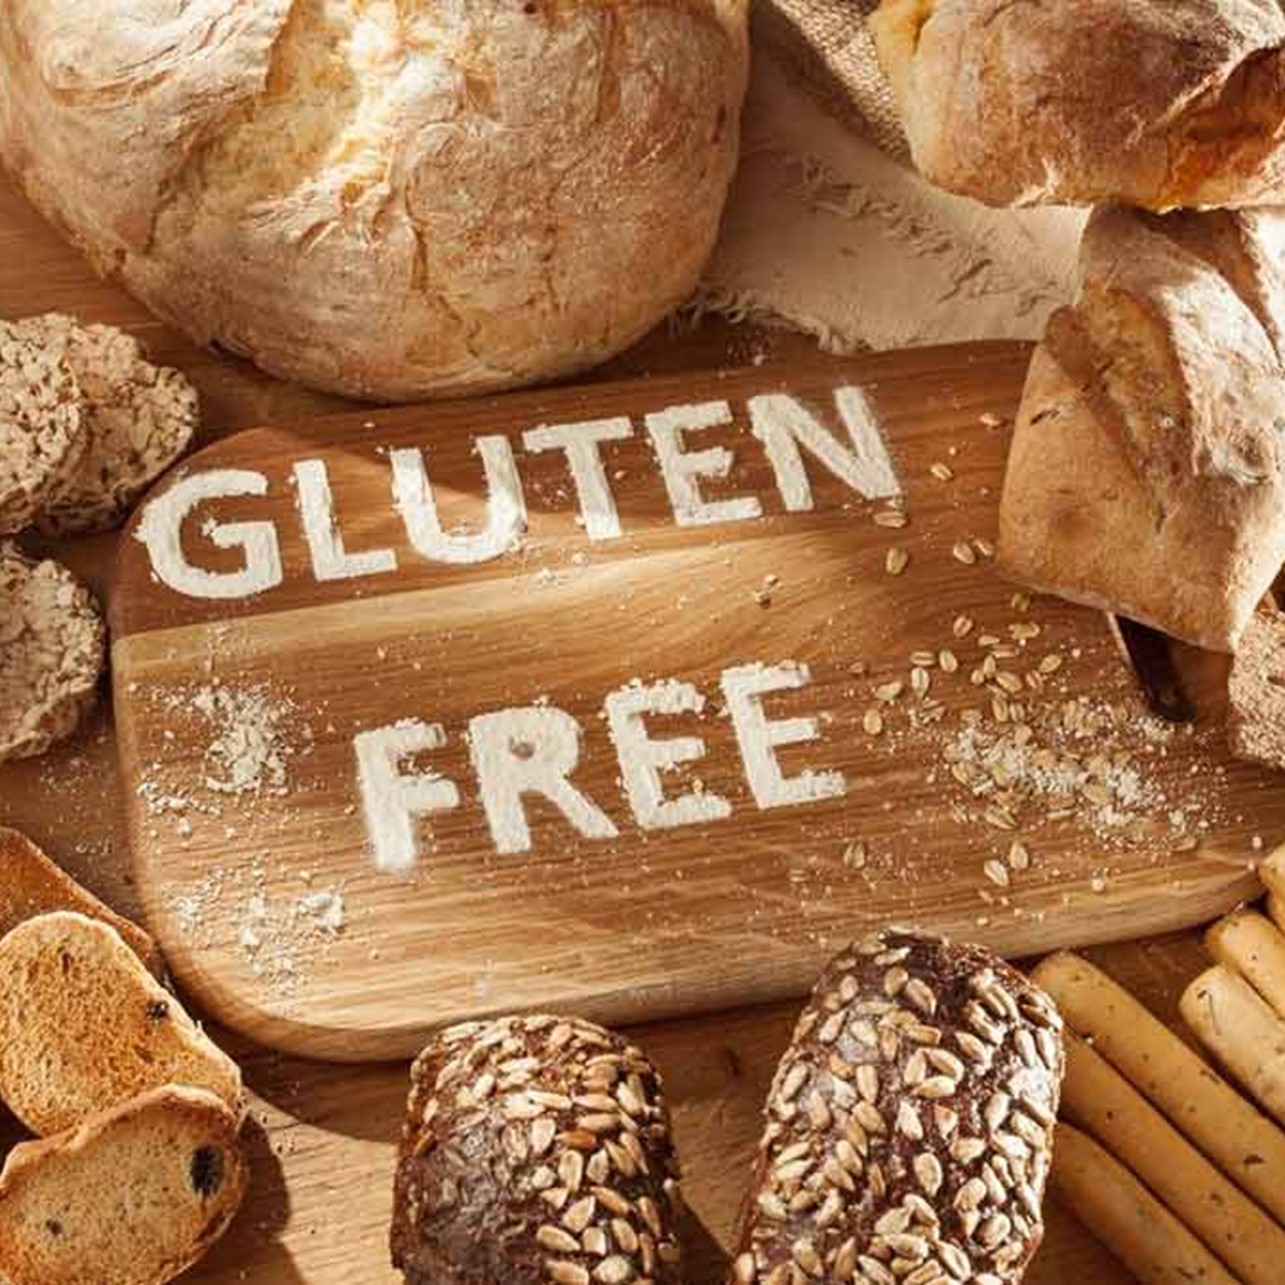 Alimentos gluten free